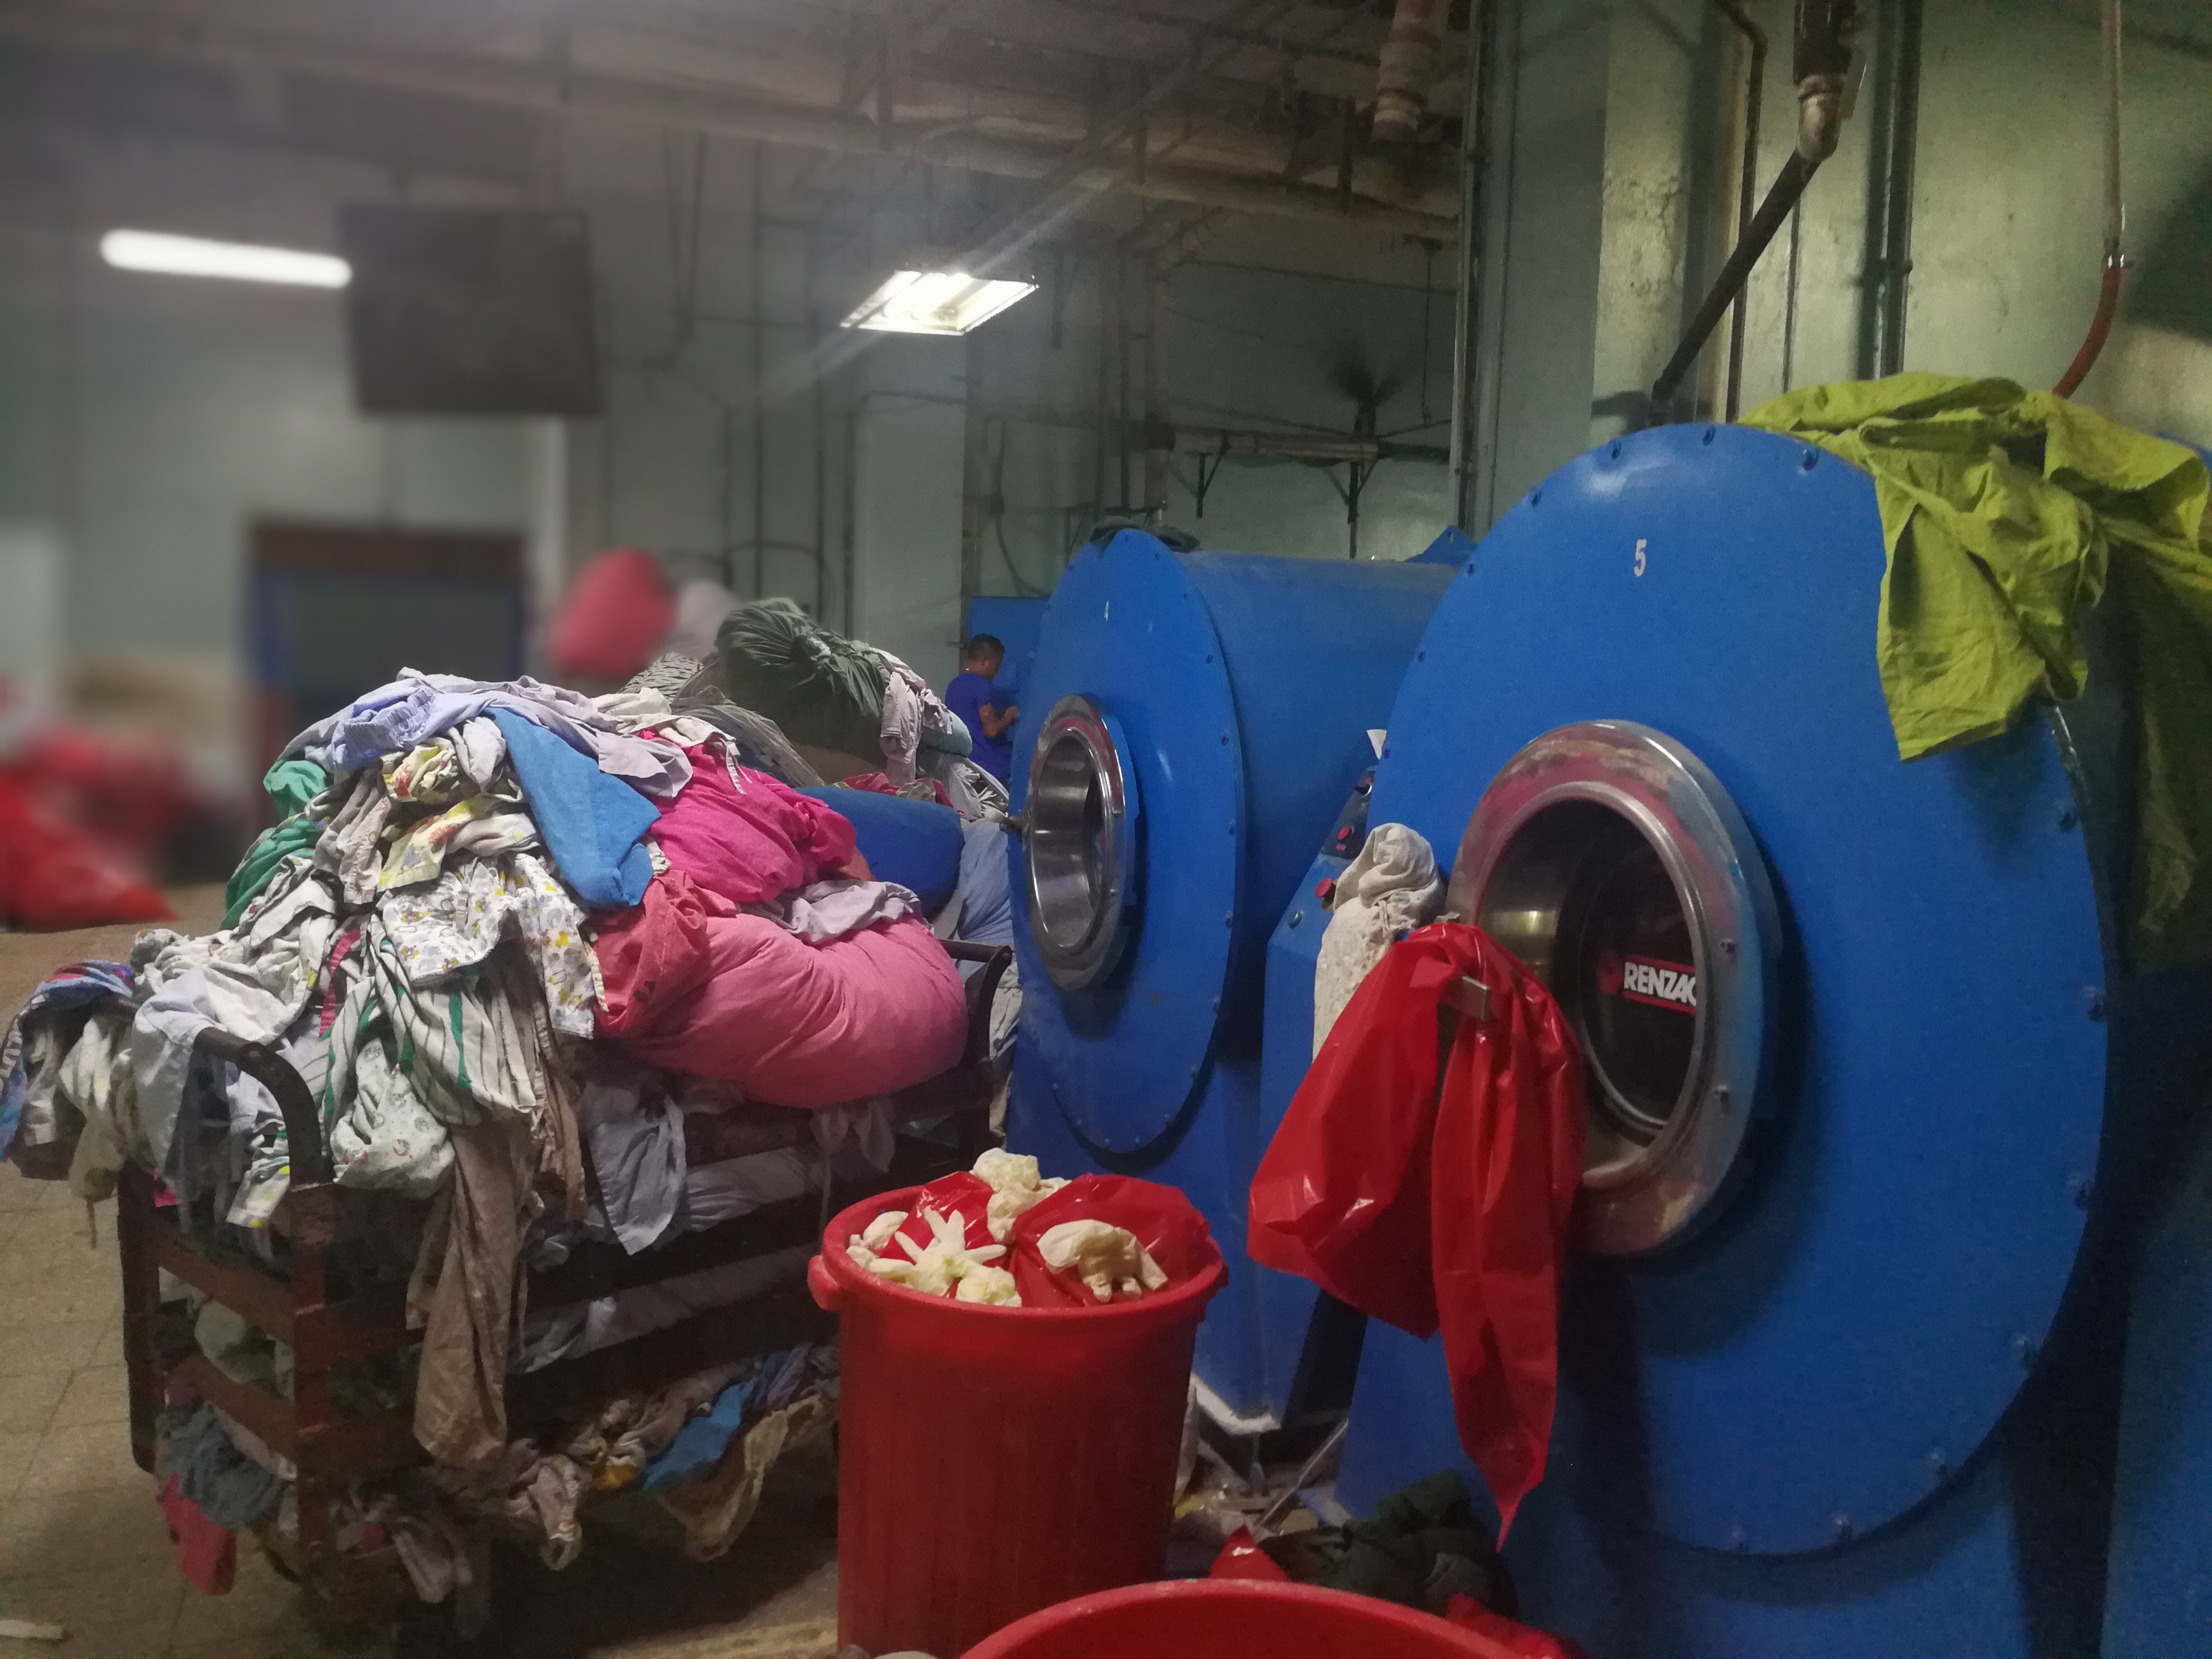 En la lavandería, la ropa se acumula diariamente, el mal funcionamiento de las calderas es parte del problema. (Foto Prensa Libre: Ana Lucía Ola)